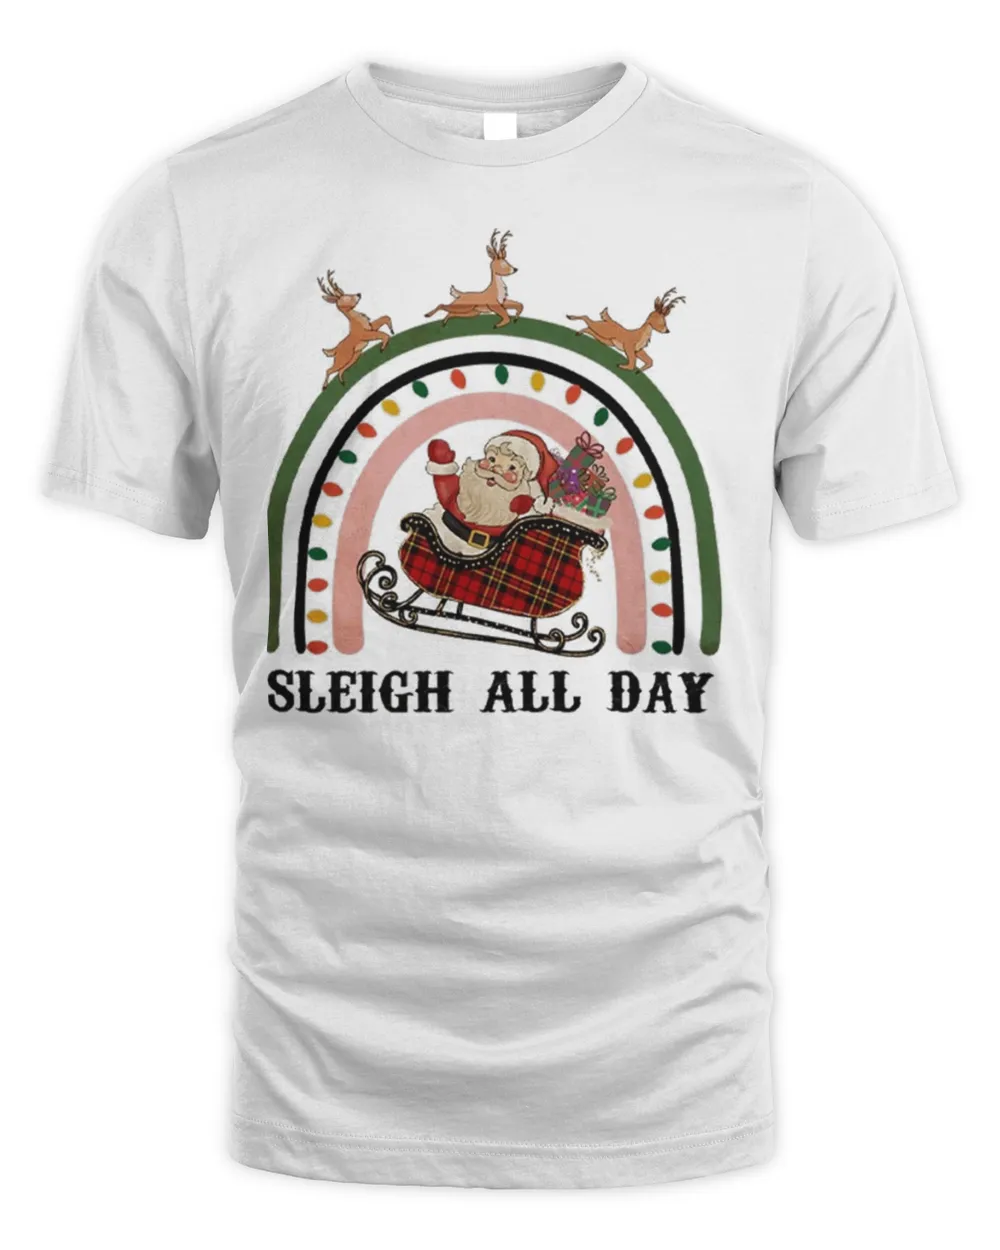 Sleigh All Day Christmas Tee Shirt